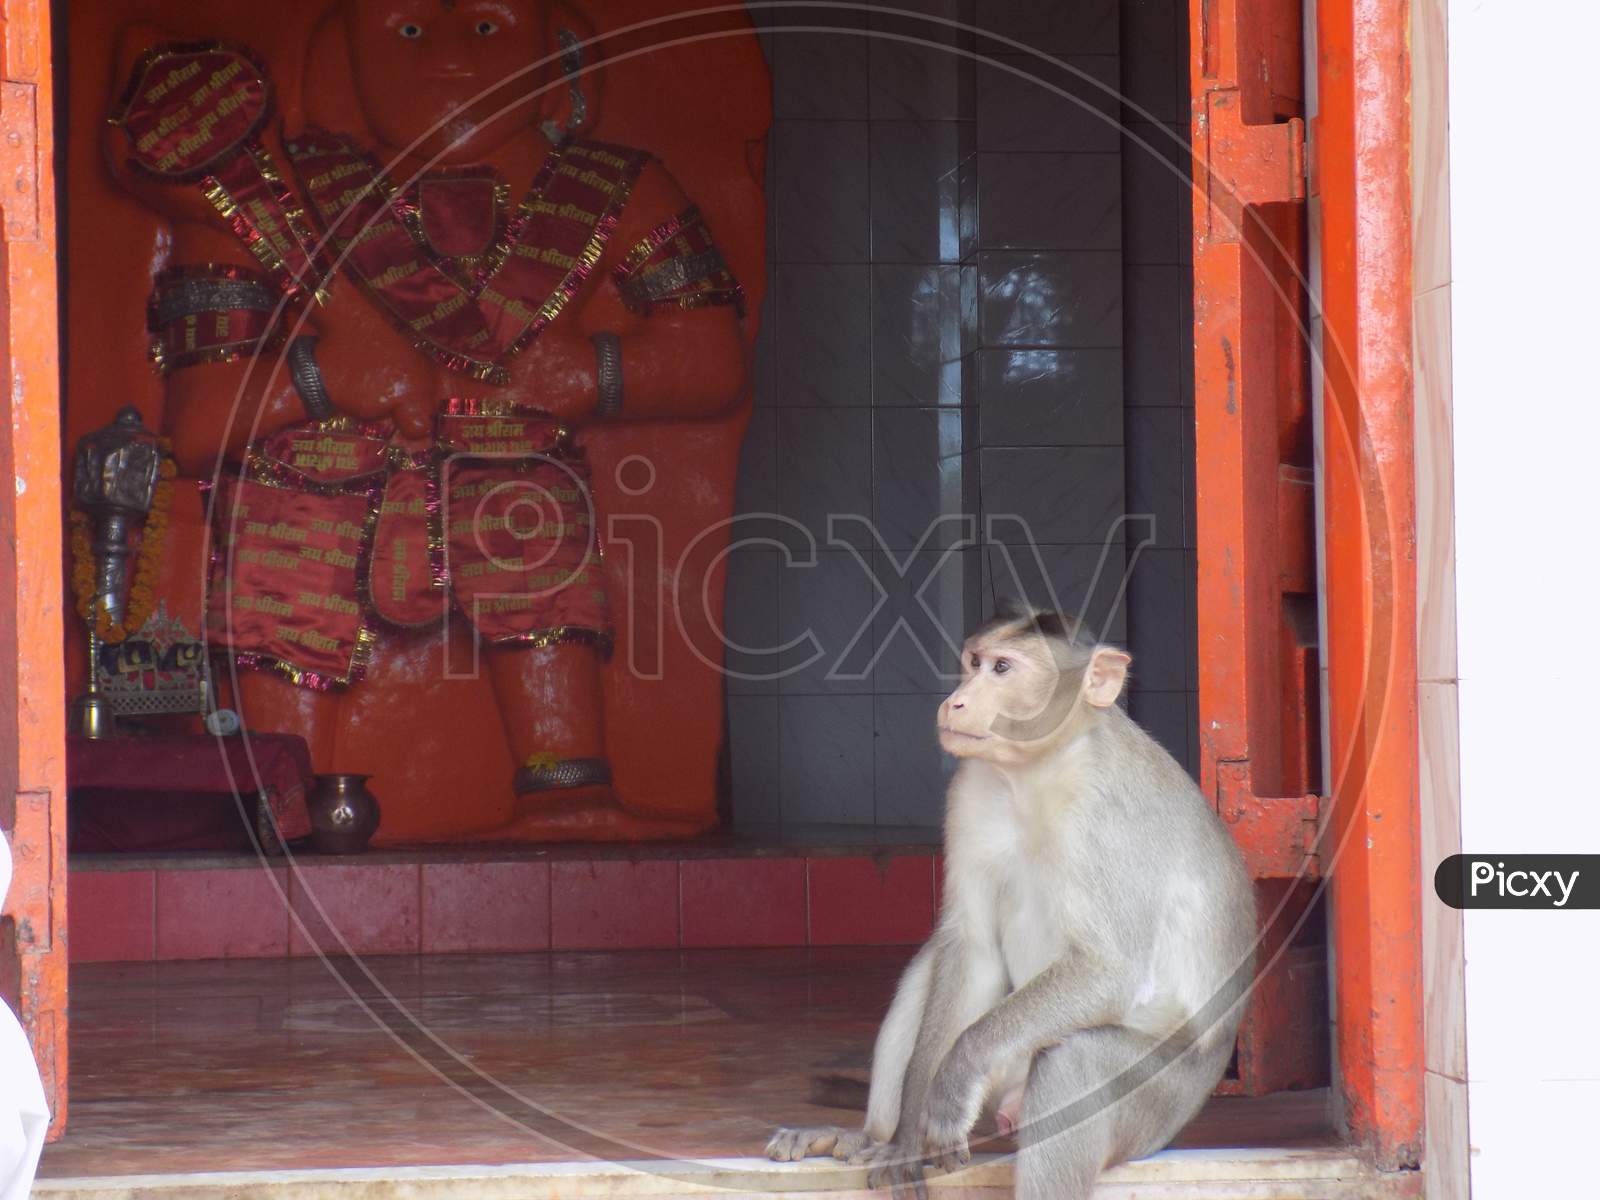 Monkey in Hanuman temple of god